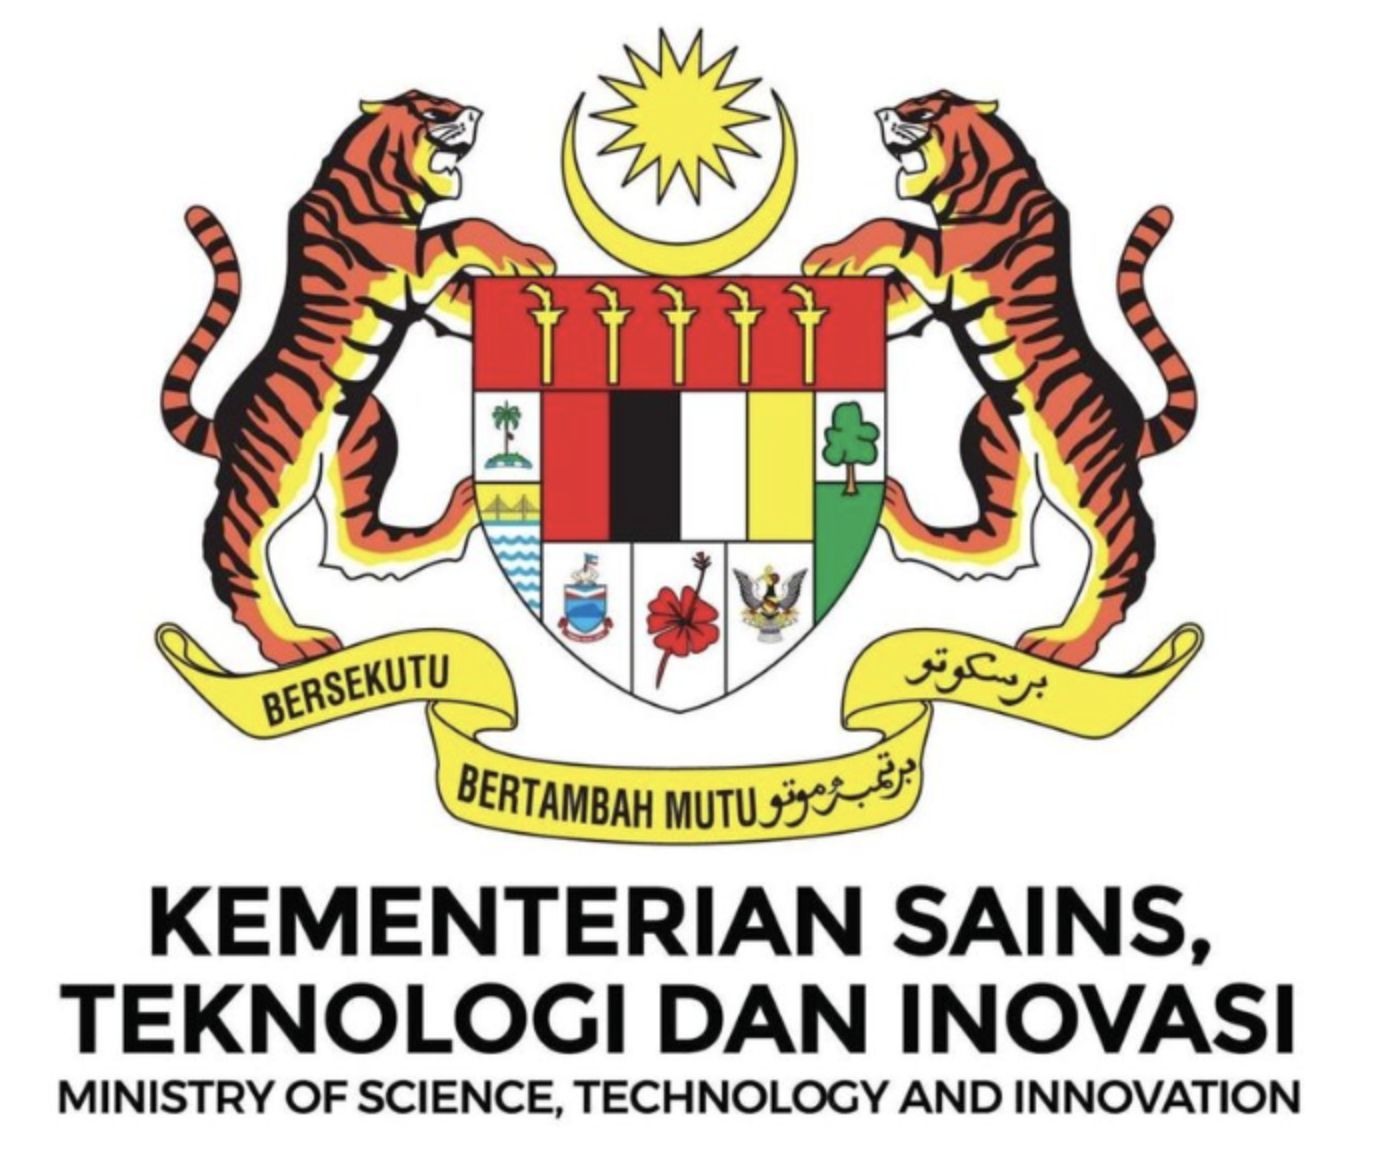 Agensi media kerajaan di bawah kementerian komunikasi dan multimedia malaysia